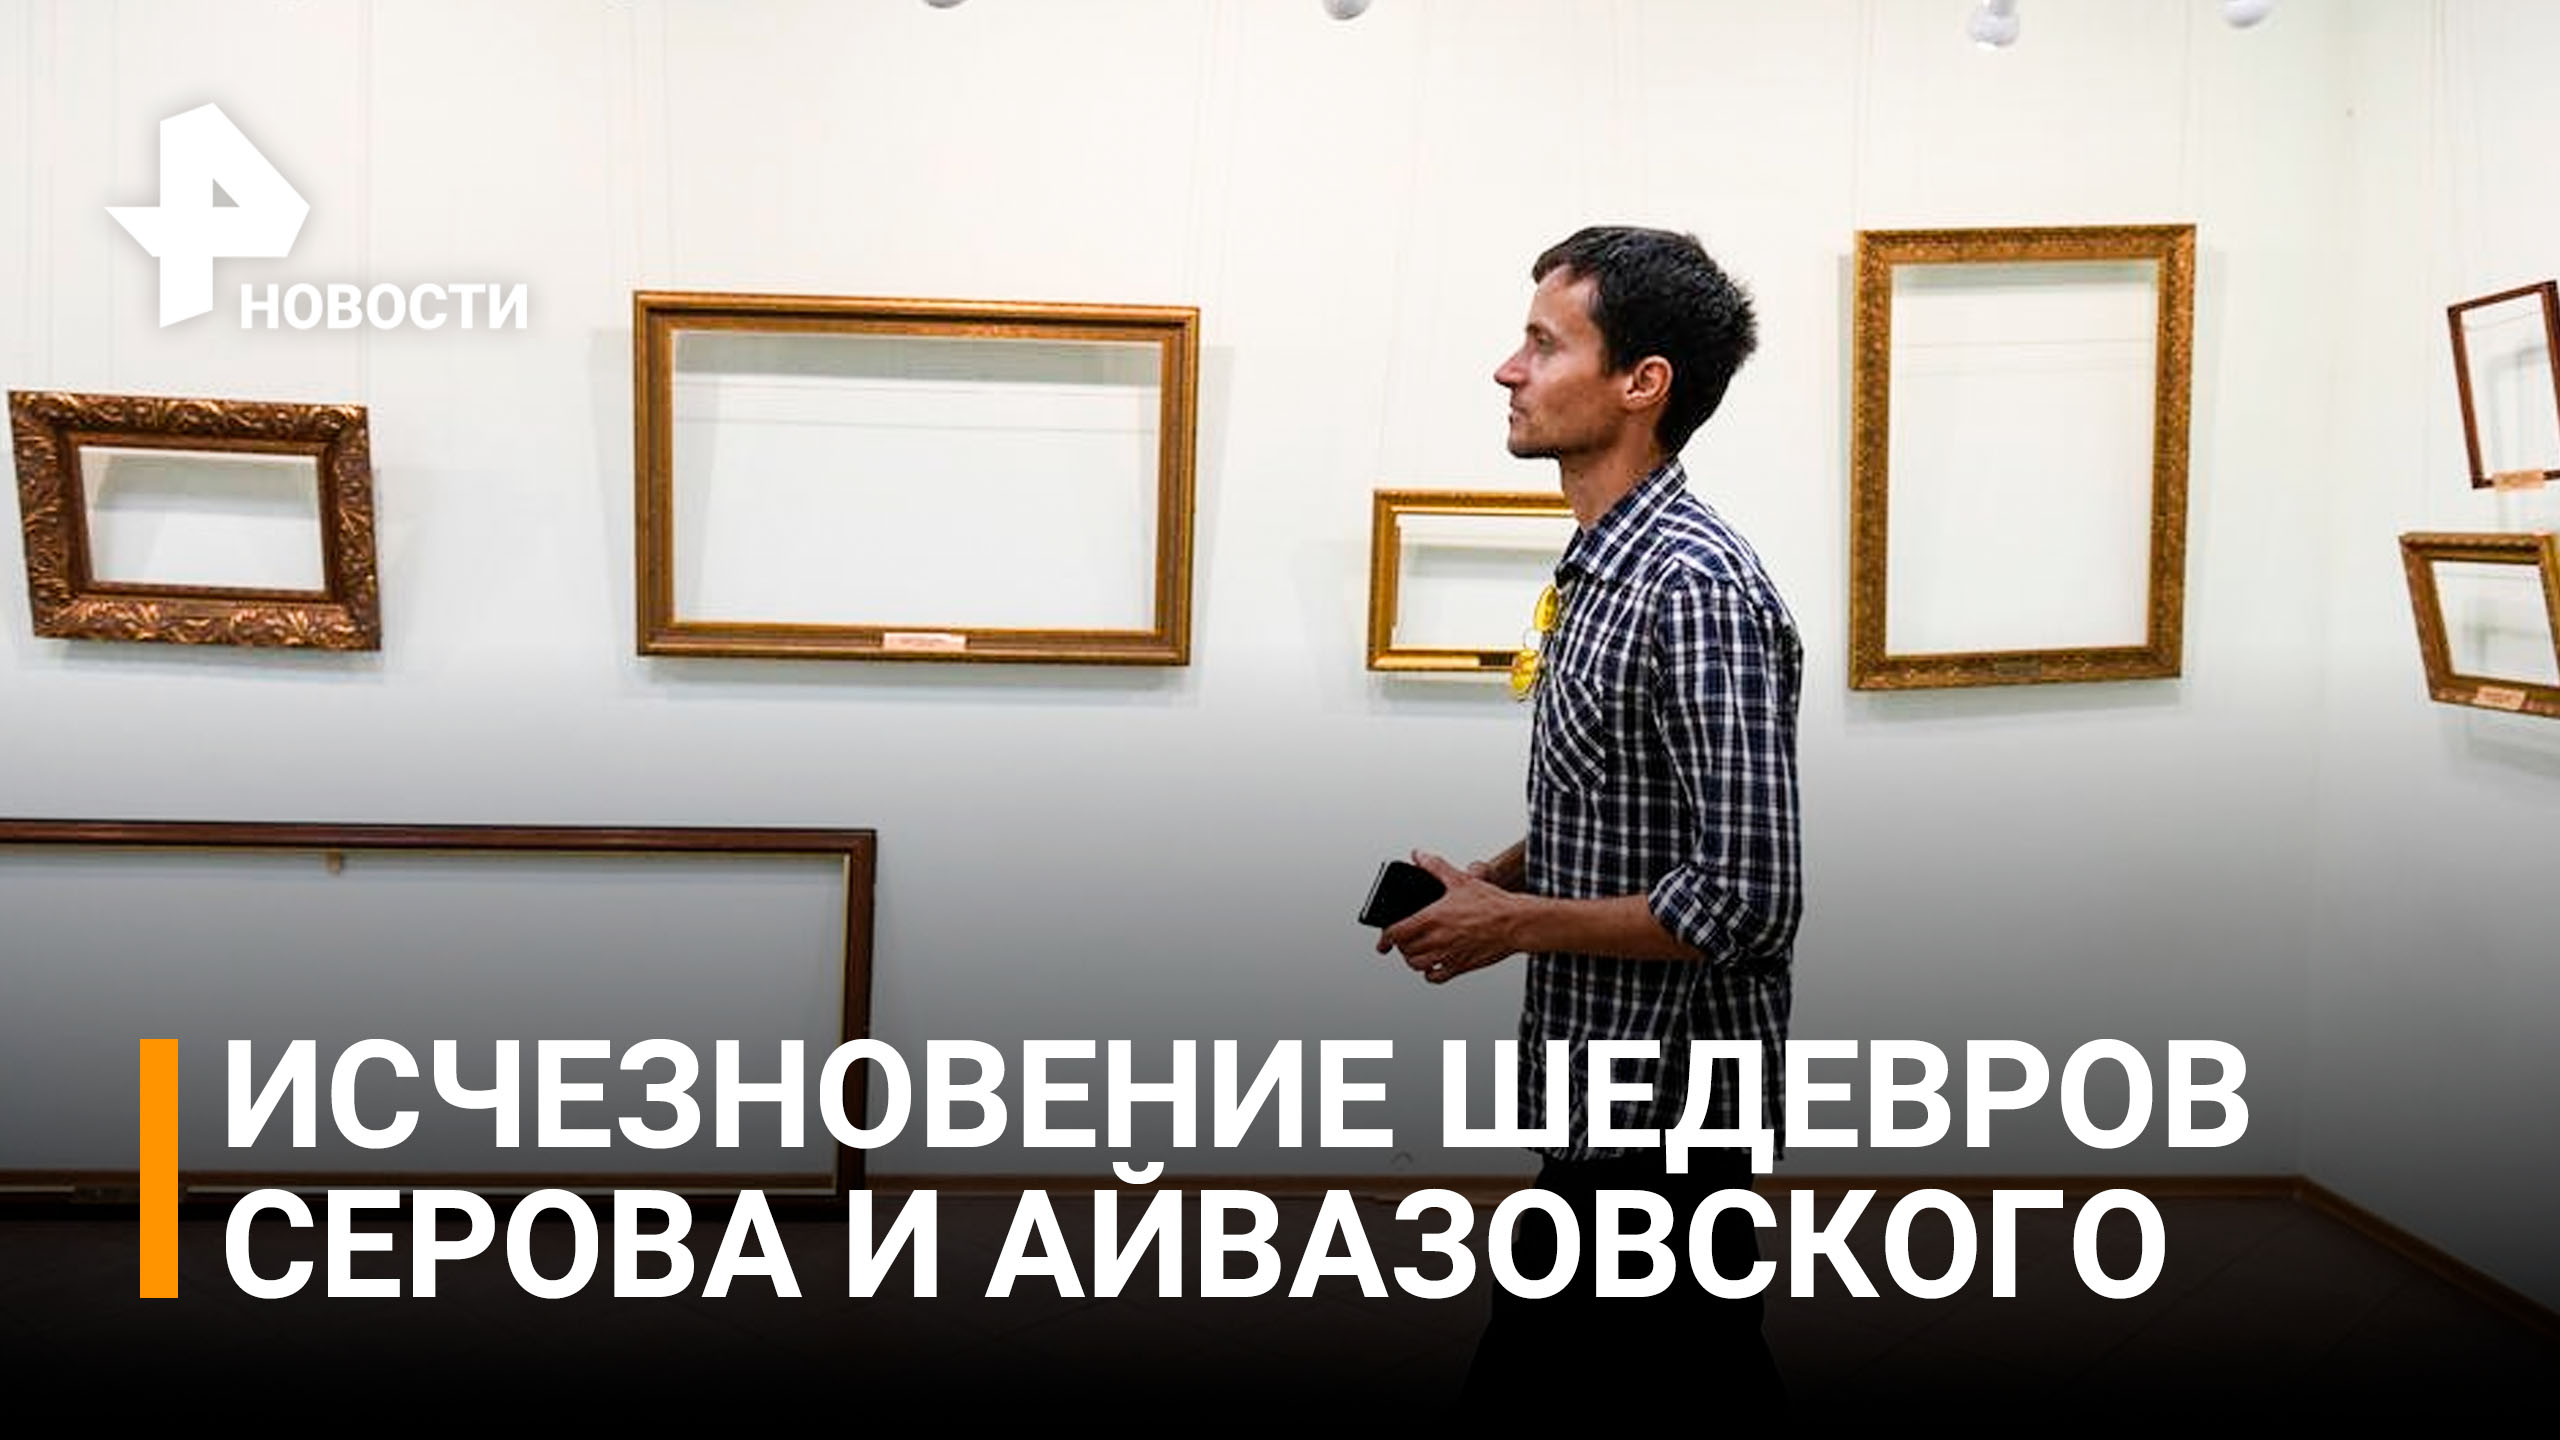 Шедевры Серова и Айвазовского таинственно исчезли из музея в Бердянске / РЕН Новости